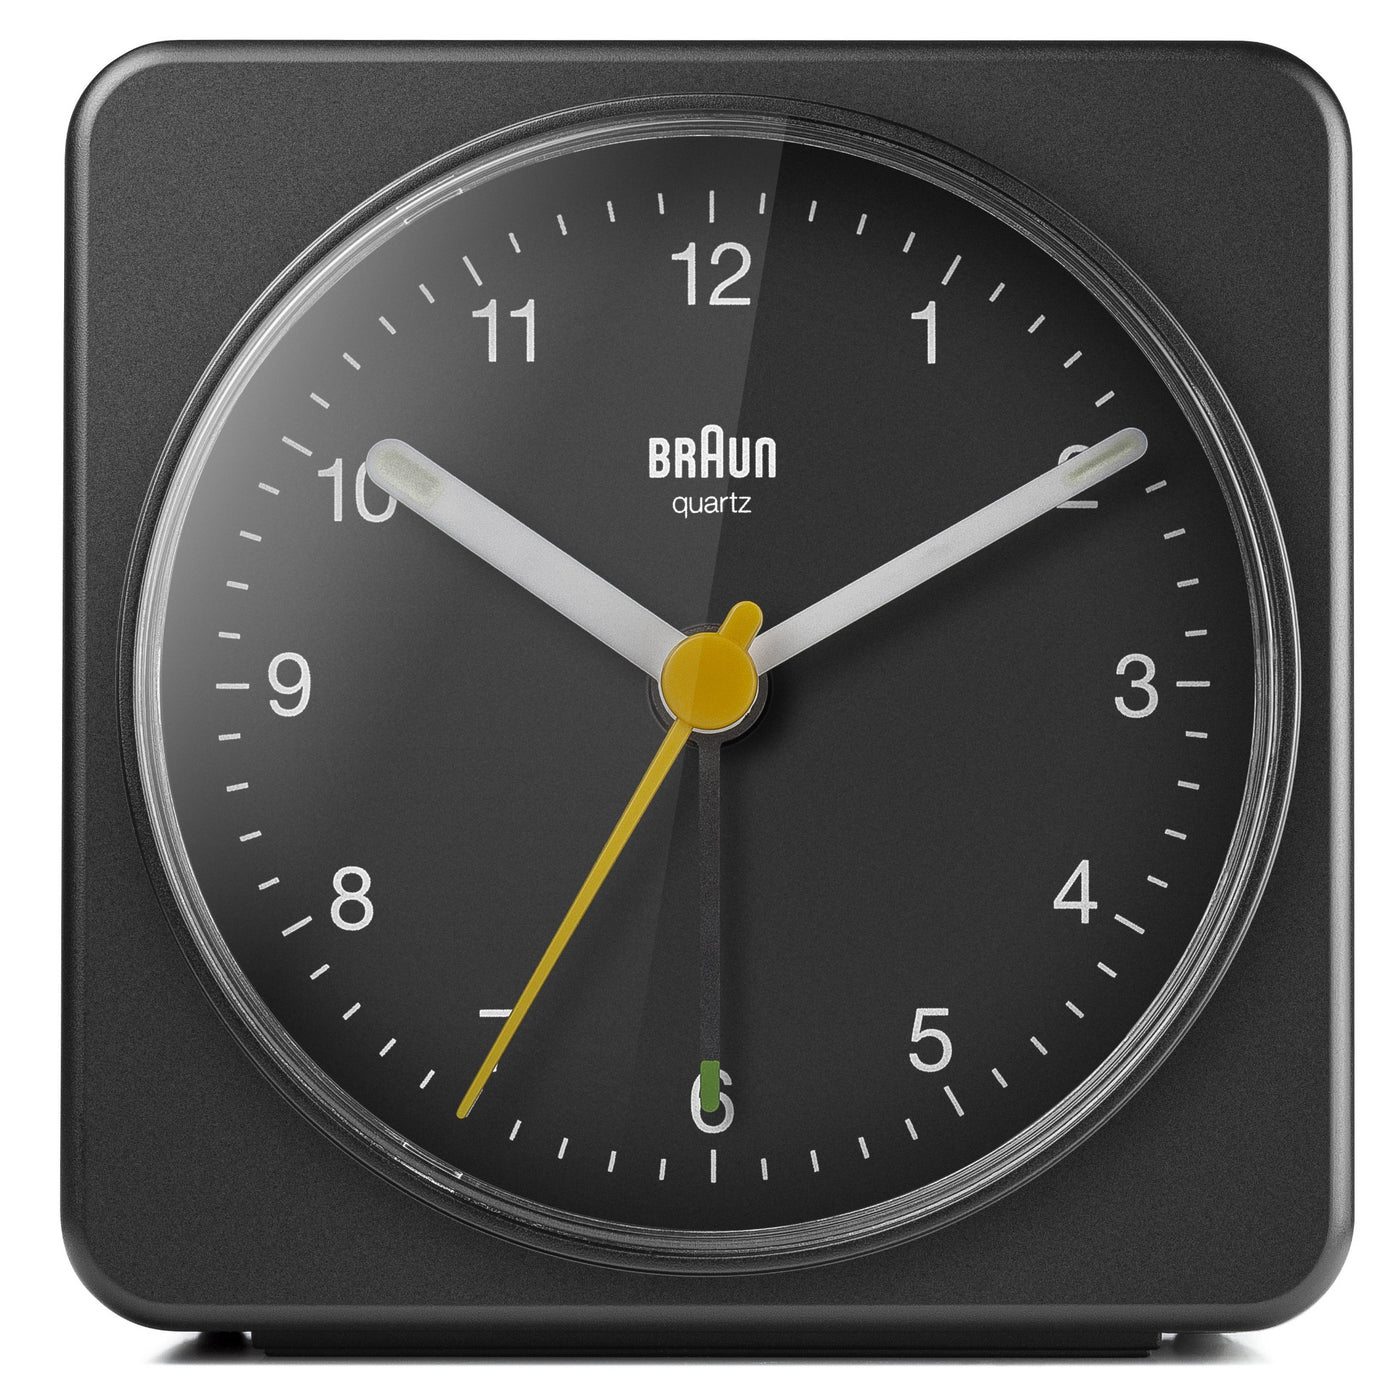 Braun Large Travel Analogue Alarm Clock – Black/Black